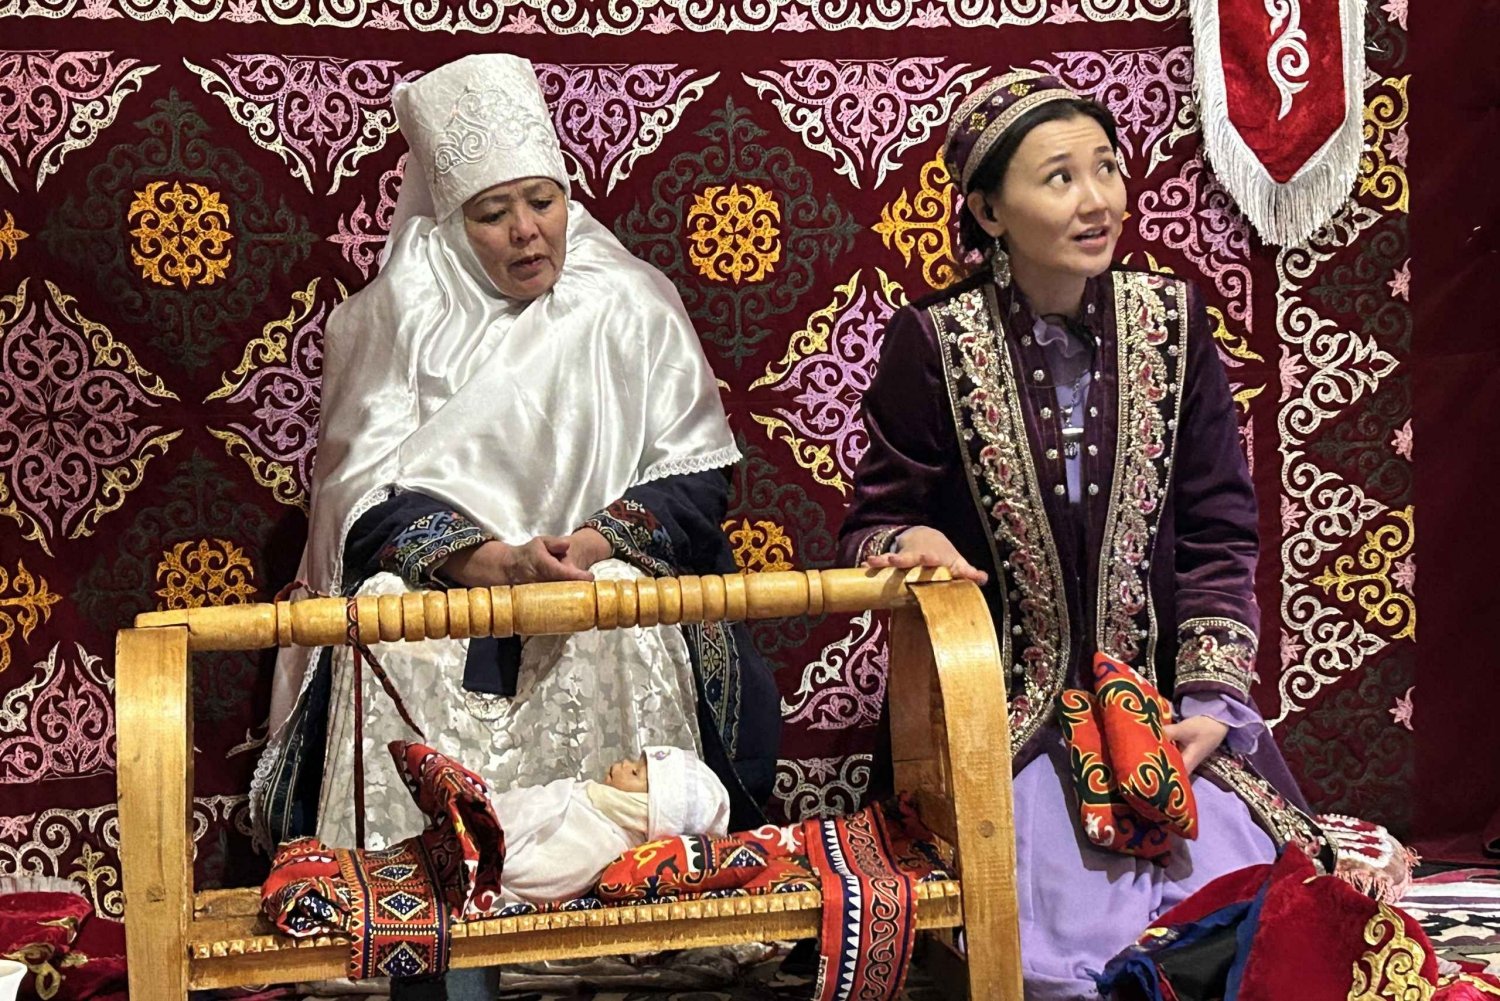 Poznaj nomadyczny styl życia w etno-wiosce 'The Huns